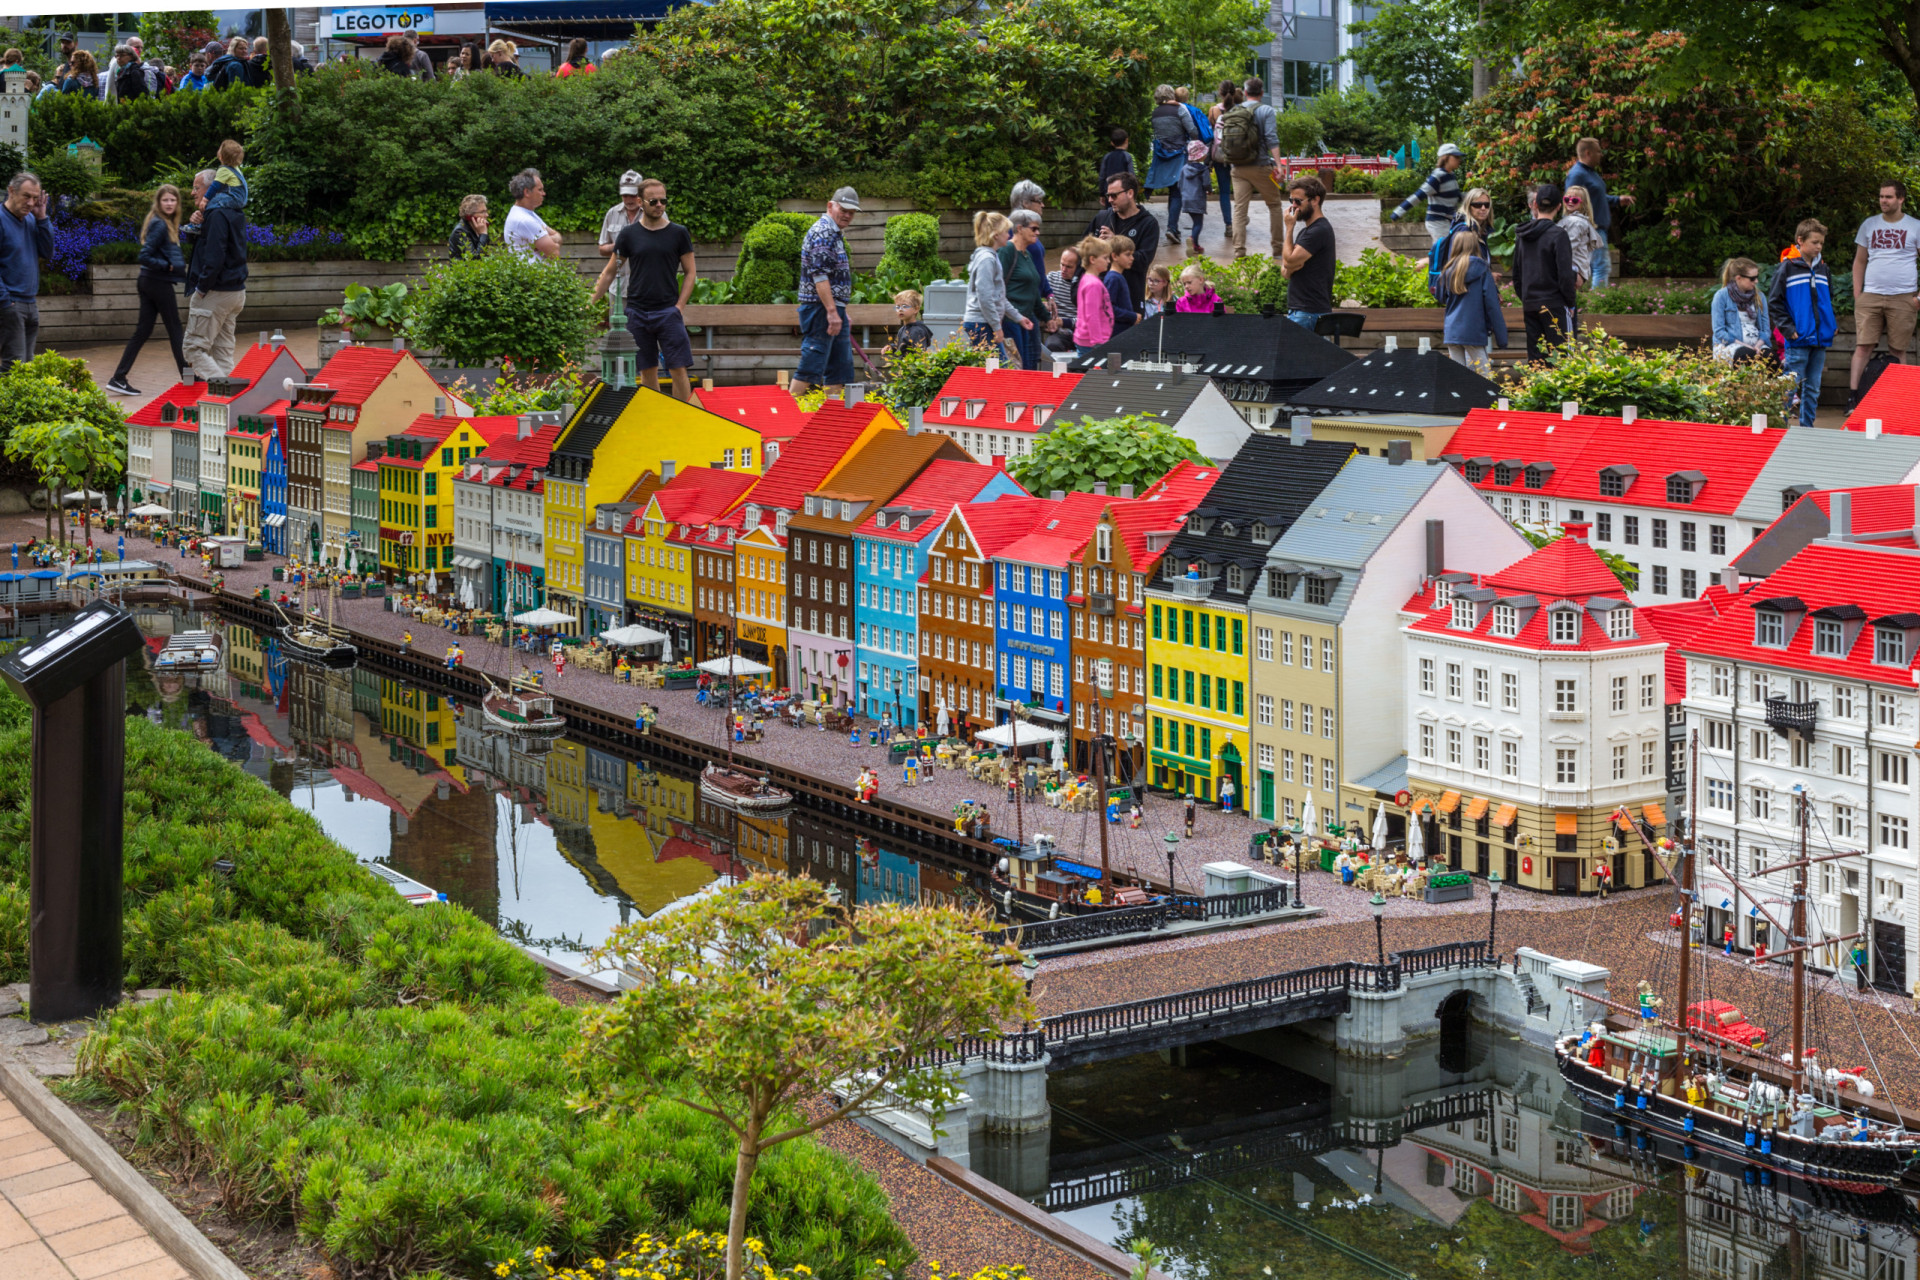 <p>Après avoir exploré Lego House, rendez-vous à Legoland où vous pouvez admirer des bâtiments et des sites miniatures en lego, dont la représentation du Nyhavn (photo) et du Château d'Amalienborg.</p><p>Tu pourrais aussi aimer: </p>